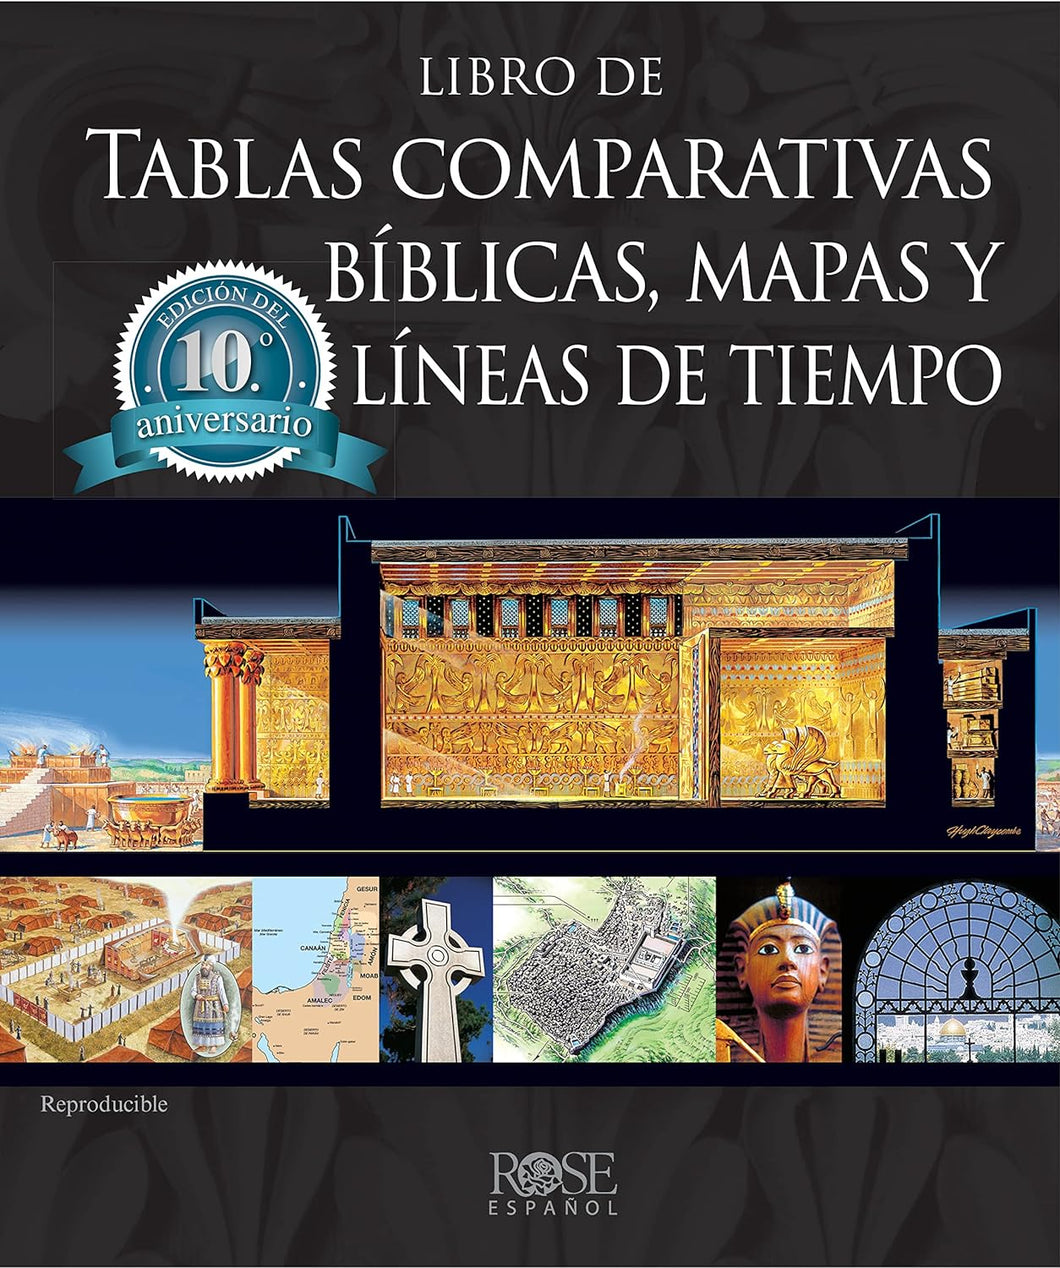 Libro de tablas comparativas bíblicas, mapas y líneas de tiempo, Edición del décimo aniversario